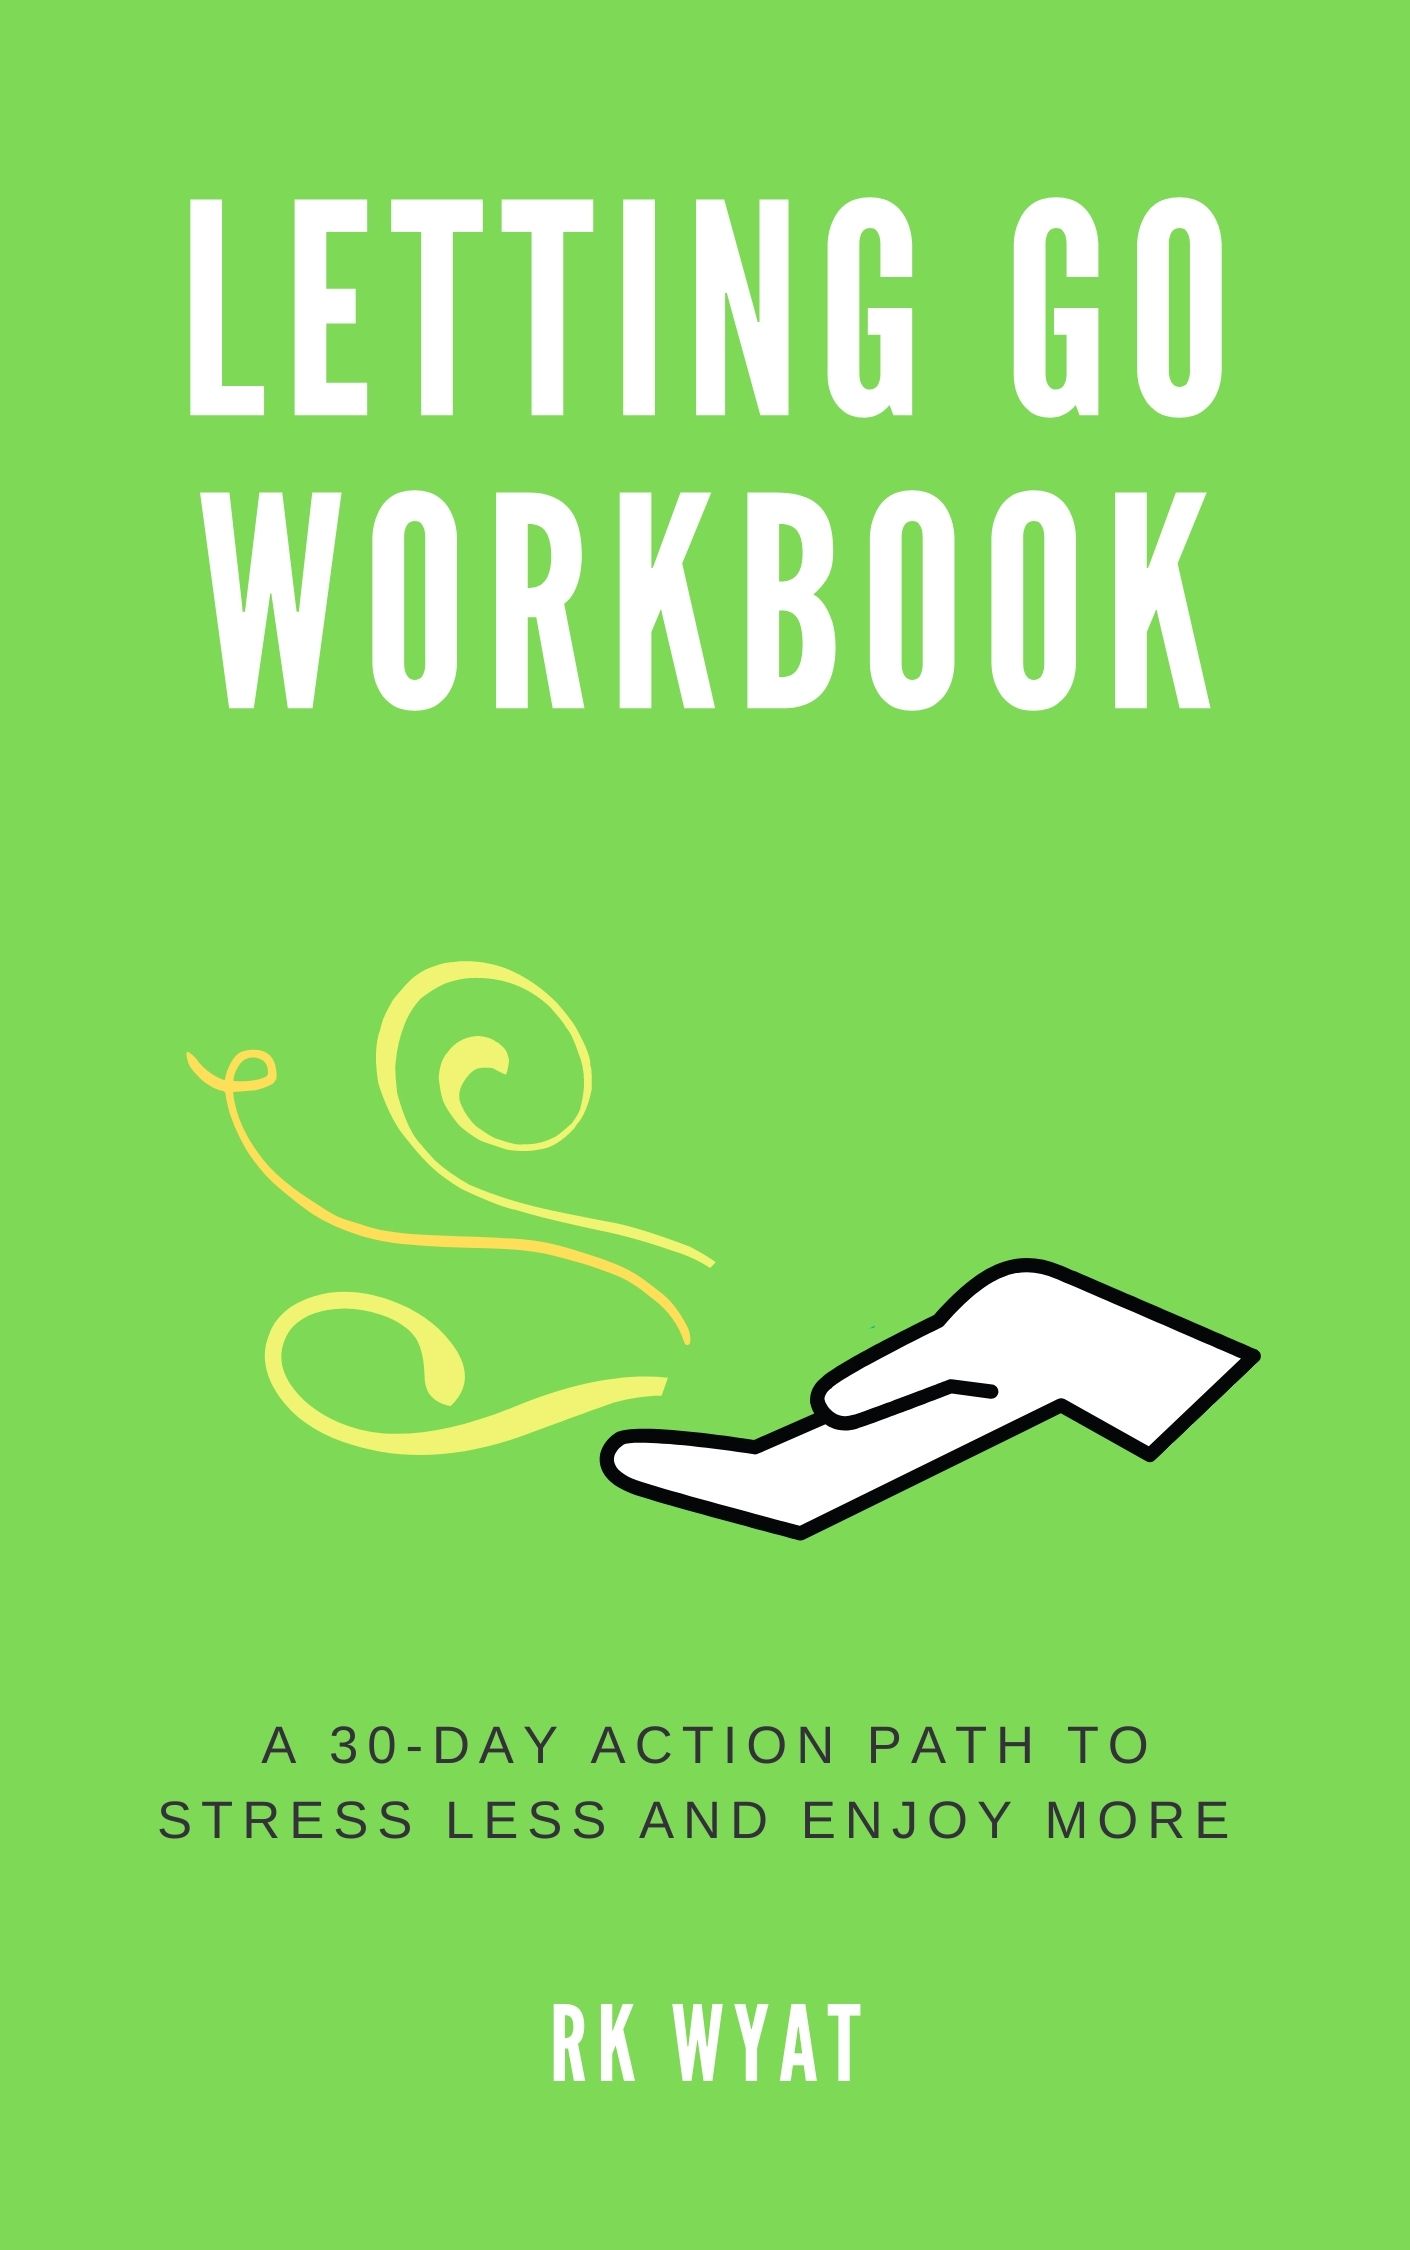 RK Wyat: Letting Go Workbook